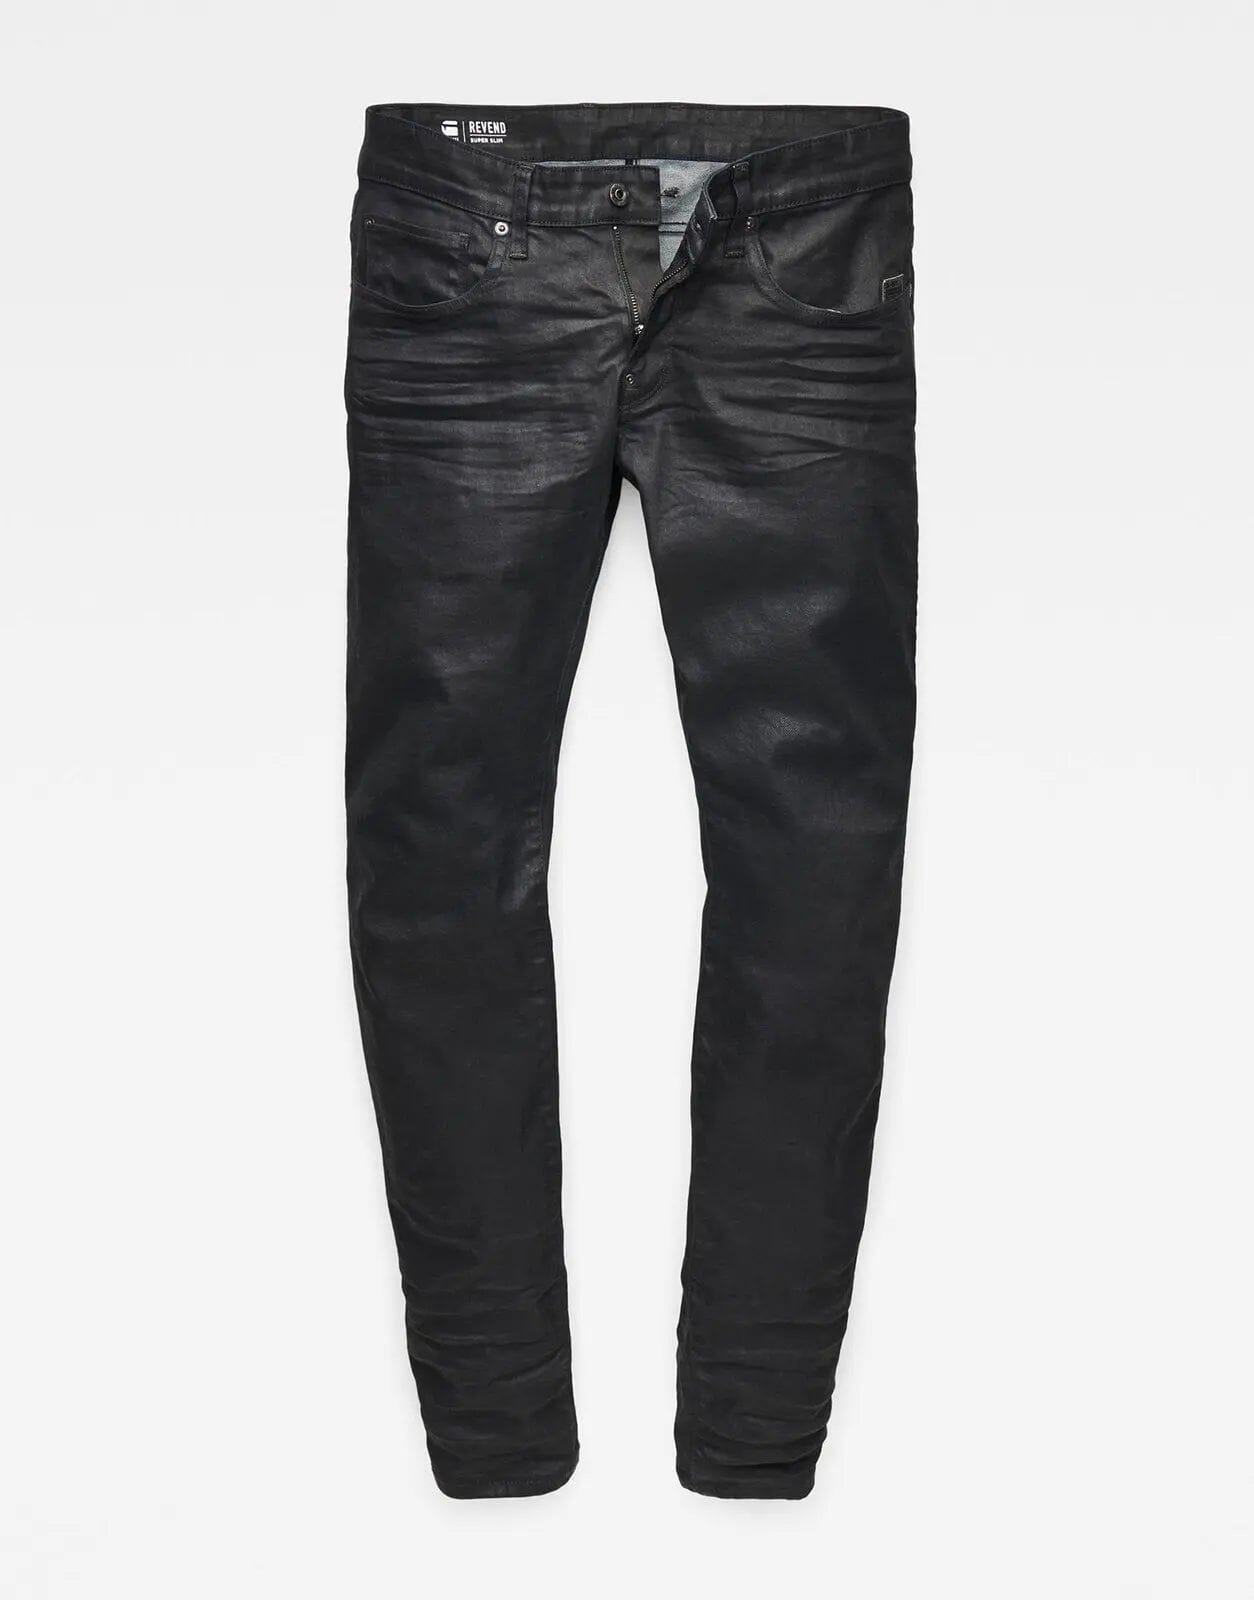 G-Star RAW Revend 3D Dark Wax coated Jeans - Subwear